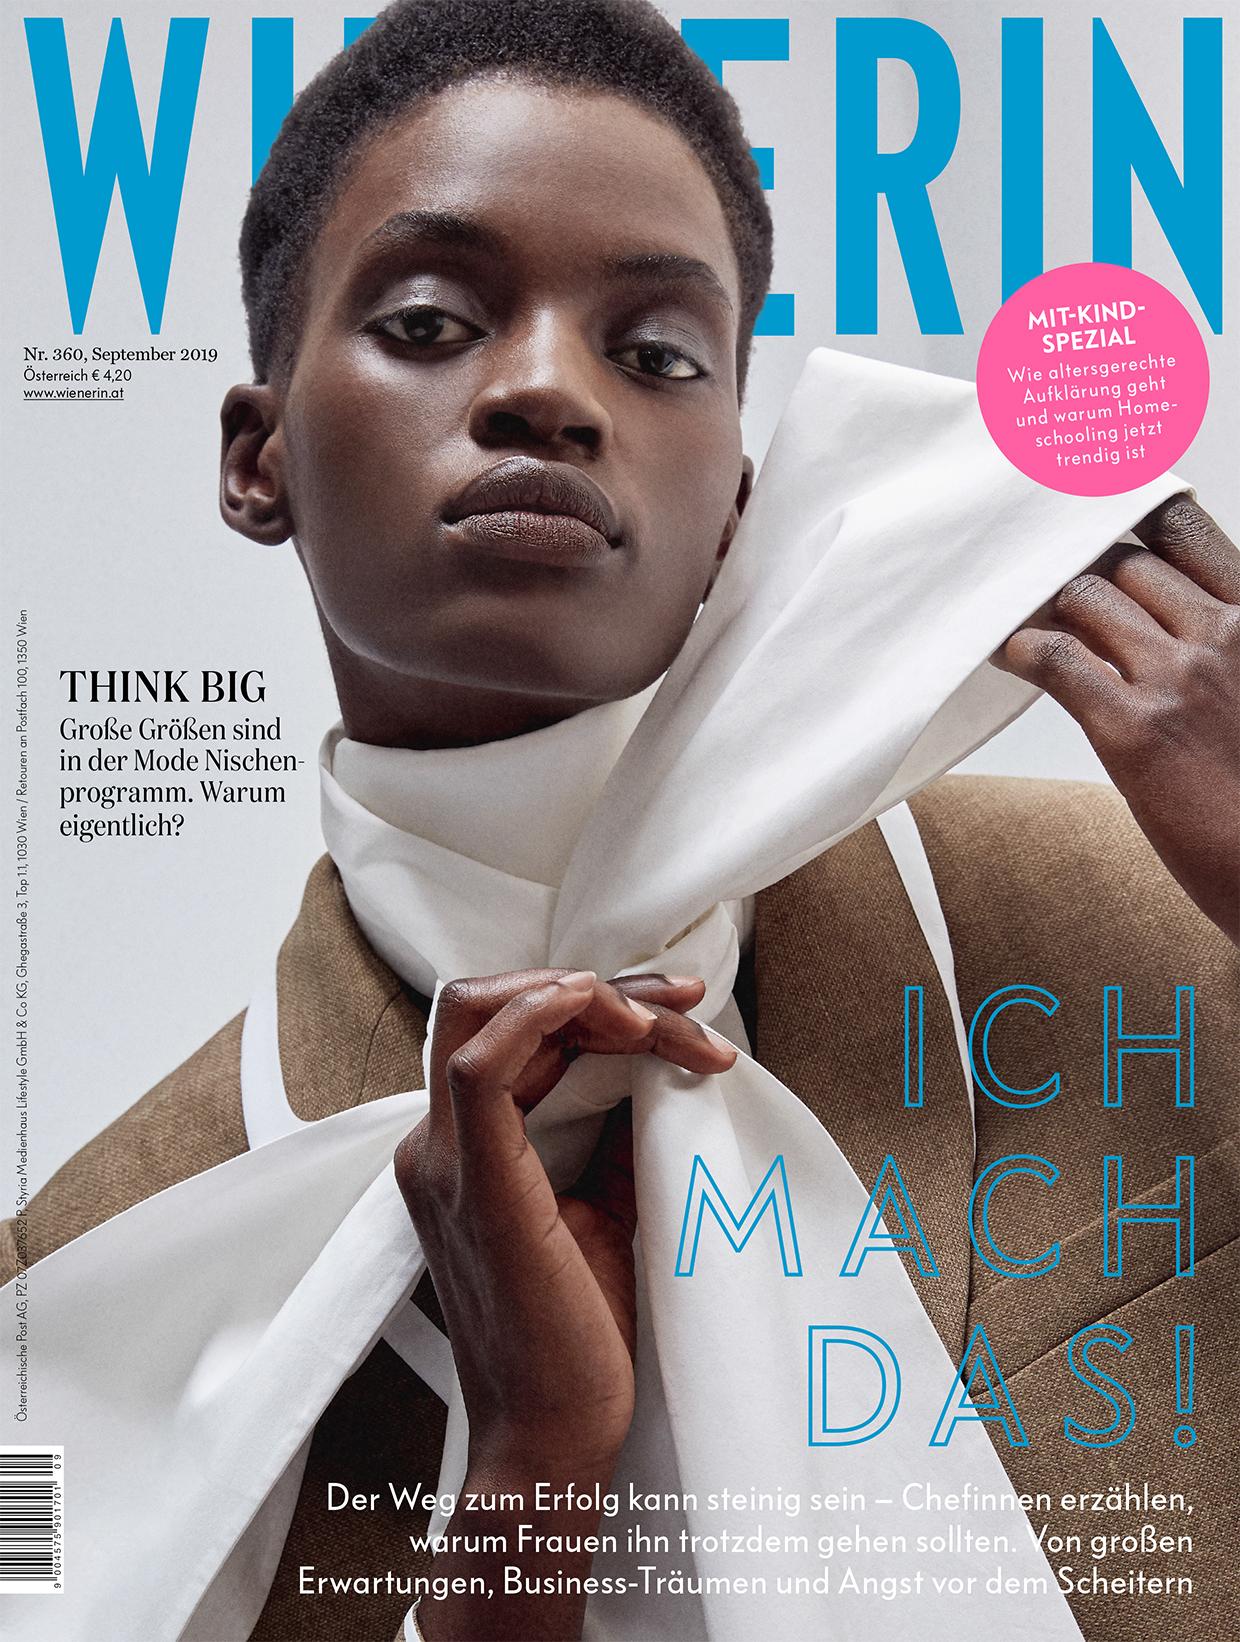 Aketch Joy Winnie for the W I E N E R I N Magazine September Issue 2019 Cover